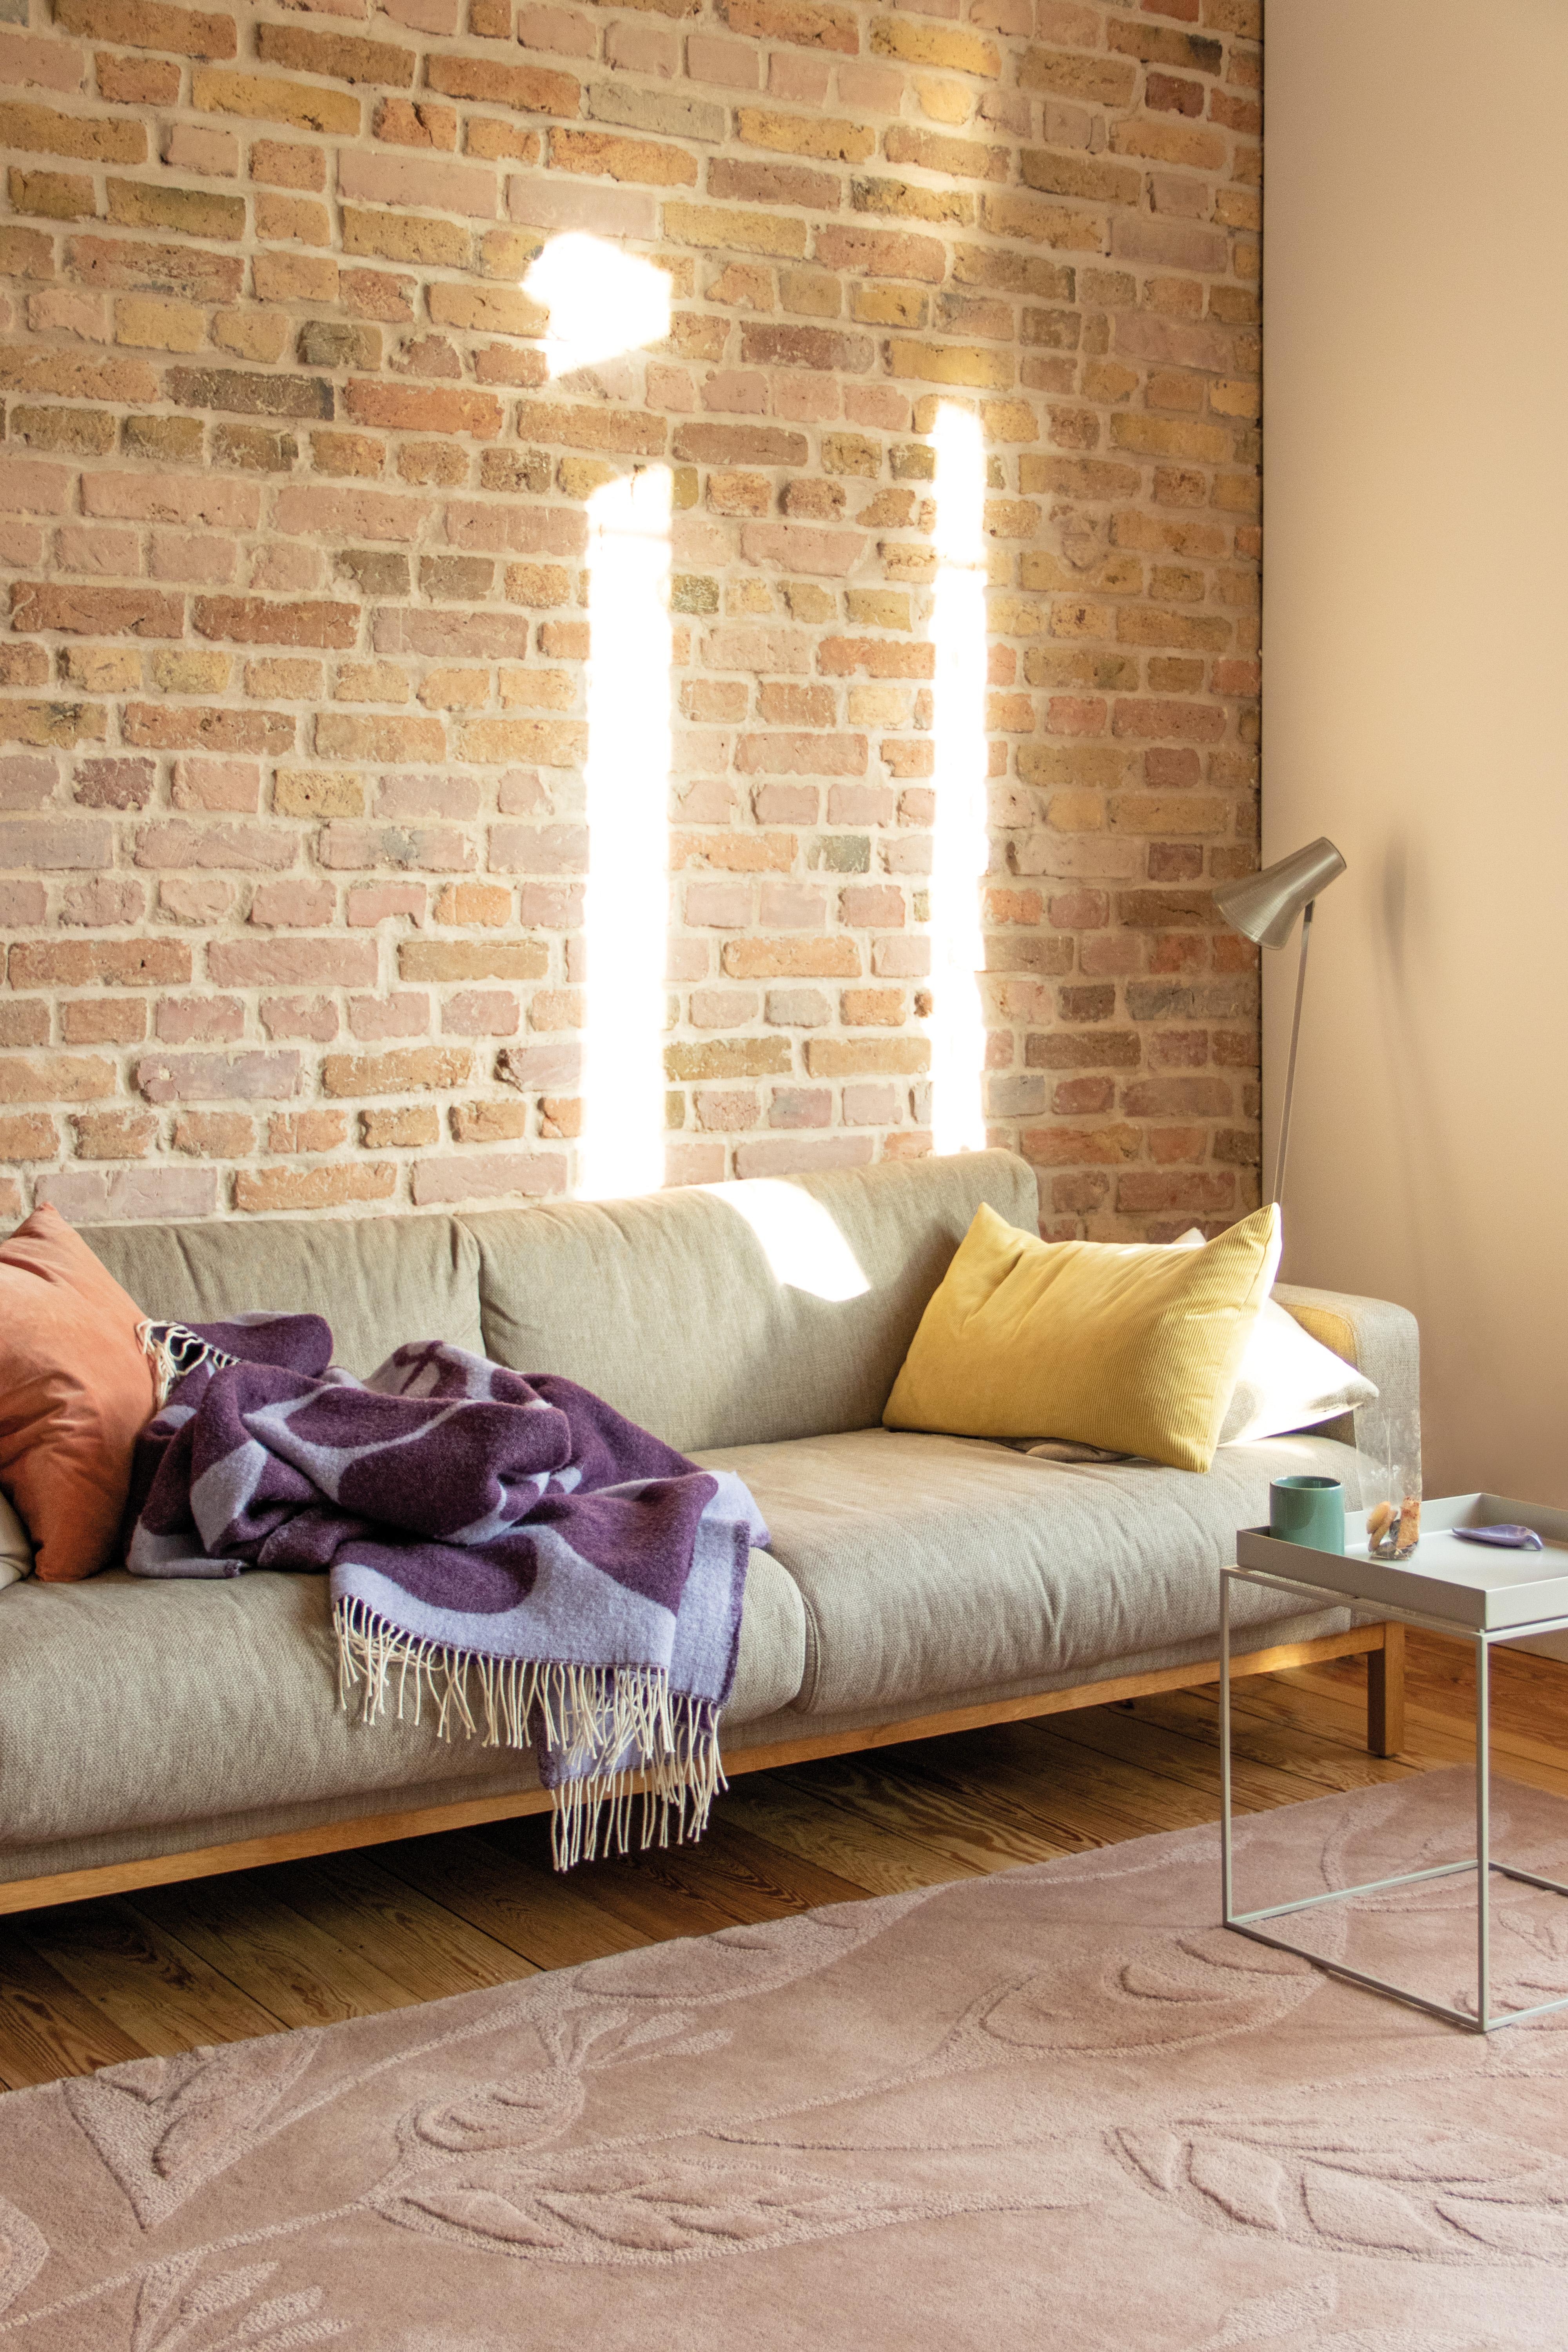 #Altbau #Wohnzimmer #Pastell #Sofa #Gemütlich #Couchmoment #Couchstyle #Couchliebt #Decke #BrickWall #Rosa #Gelb